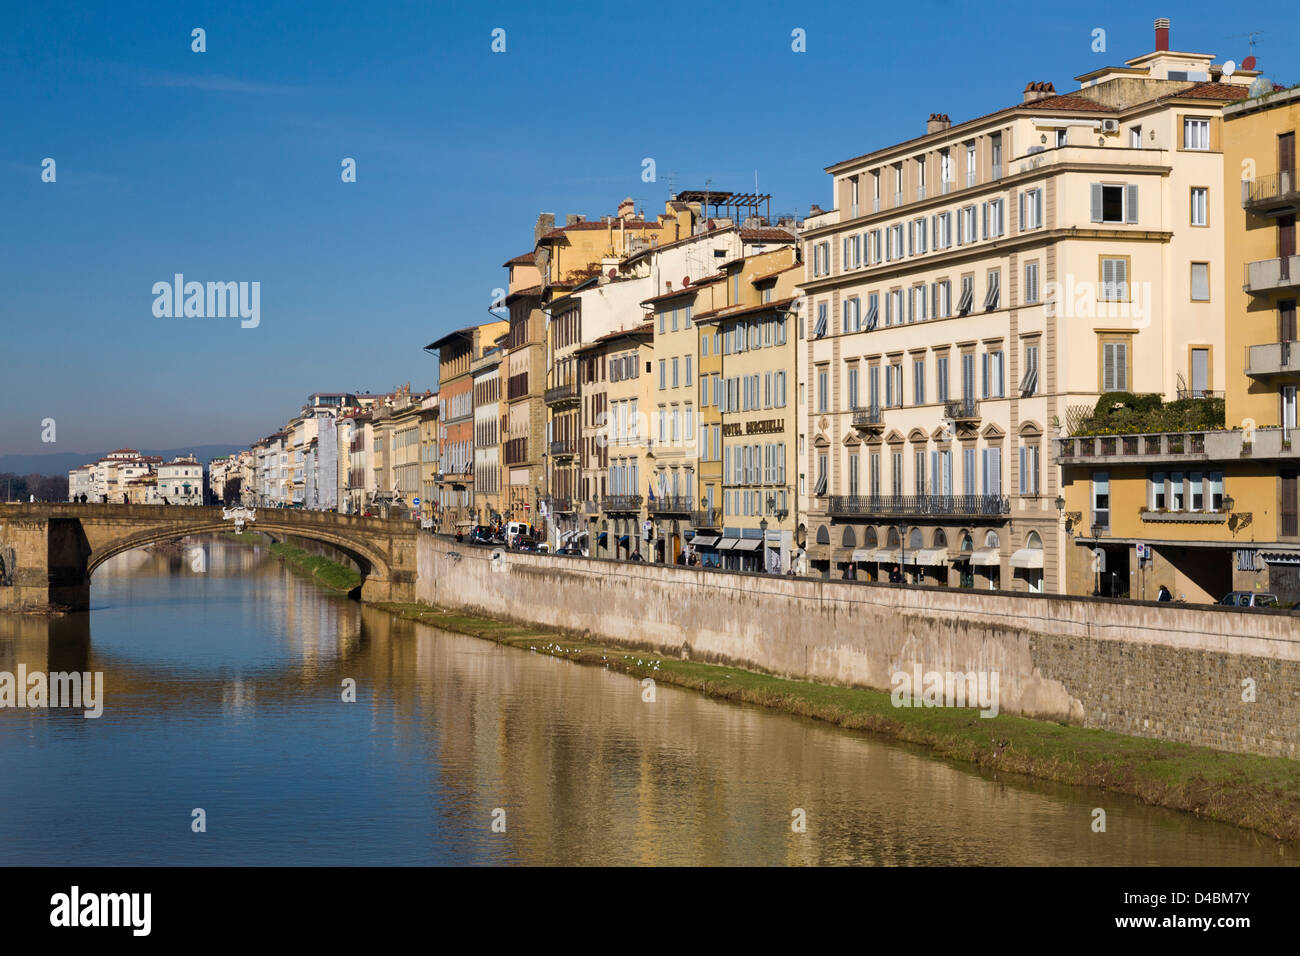 Ver a lo largo del fiume Arno hacia el Ponte Santa Trinita de Ponte Vecchio, Florencia, Italia. Foto de stock